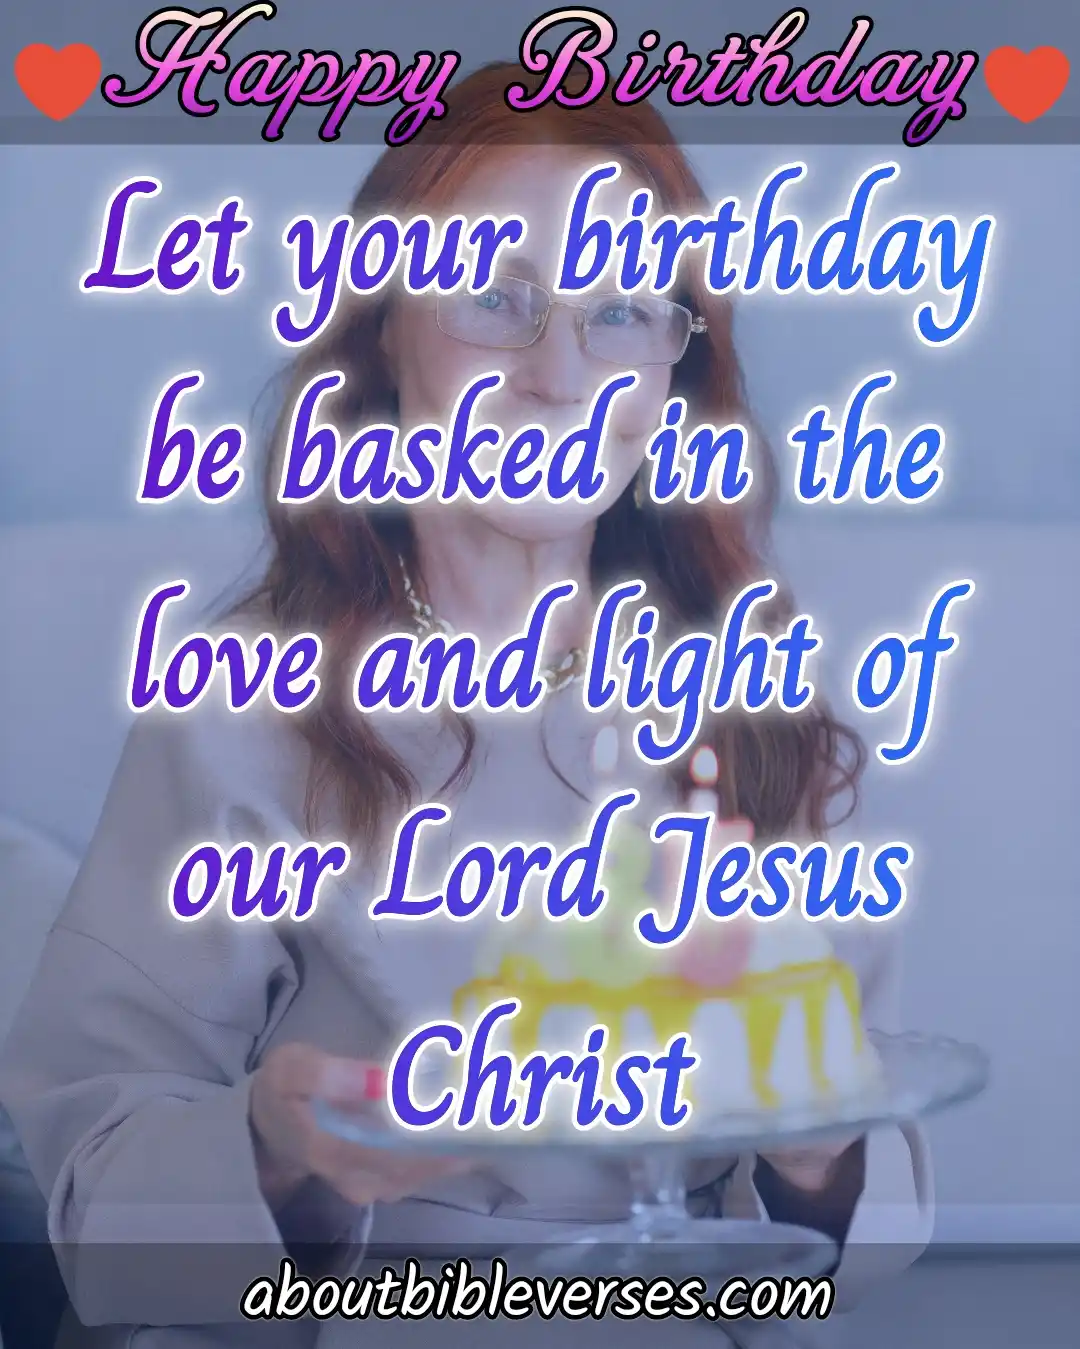 Más de 15 versículos bíblicos de feliz cumpleaños con imágenes, deseos y citas